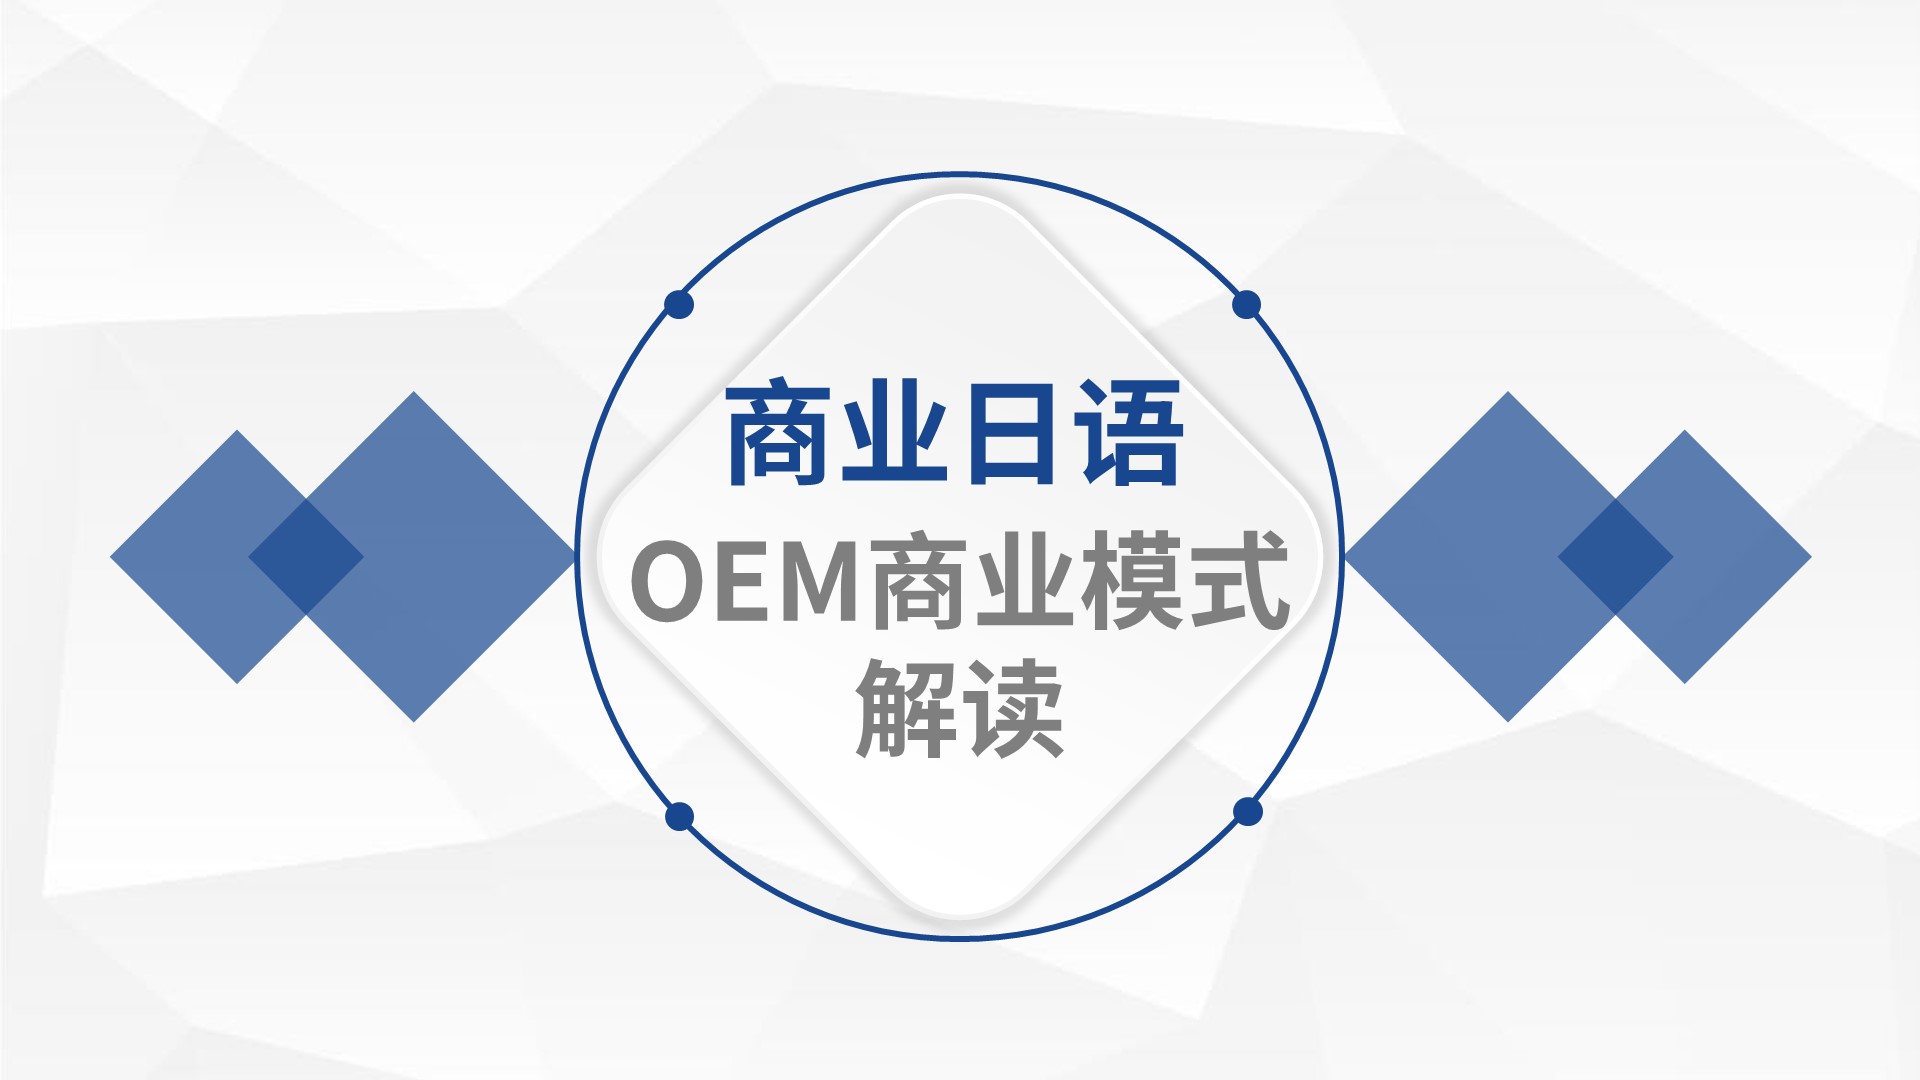 商业日语：OEM商业模式解读